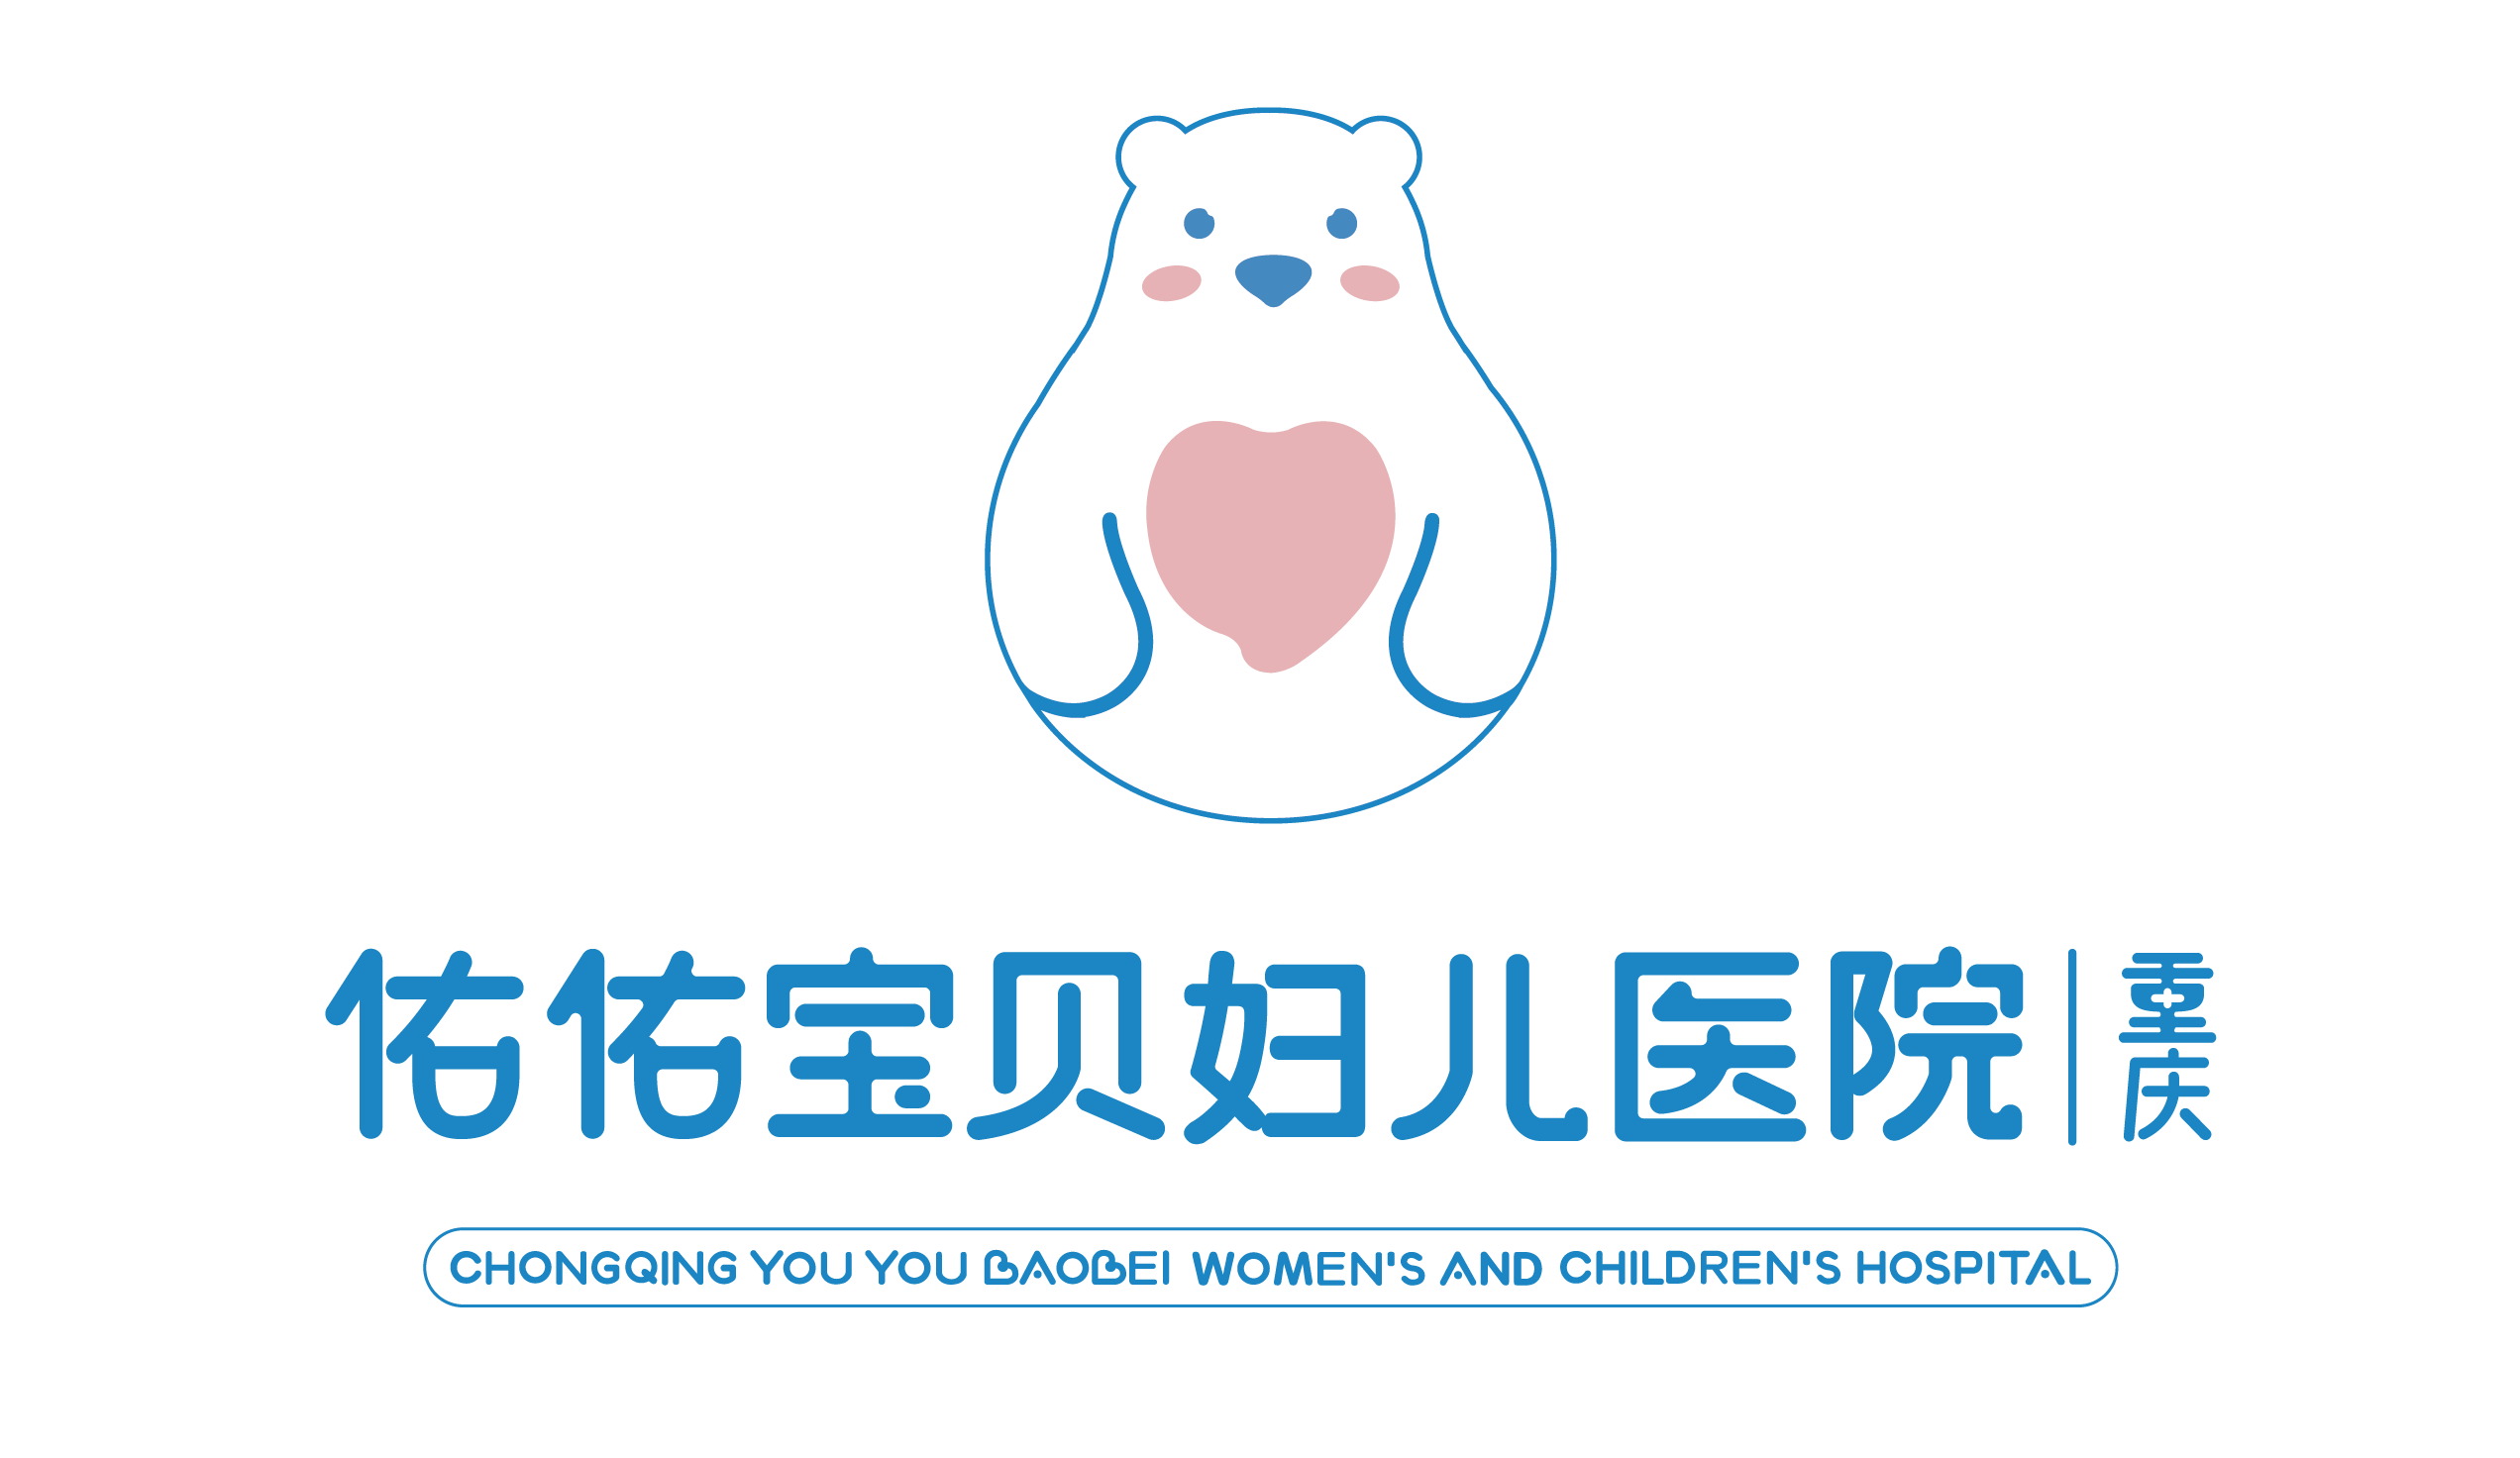 公司简介     重庆佑佑宝贝妇儿医院是重庆医科大学附属儿童医院医